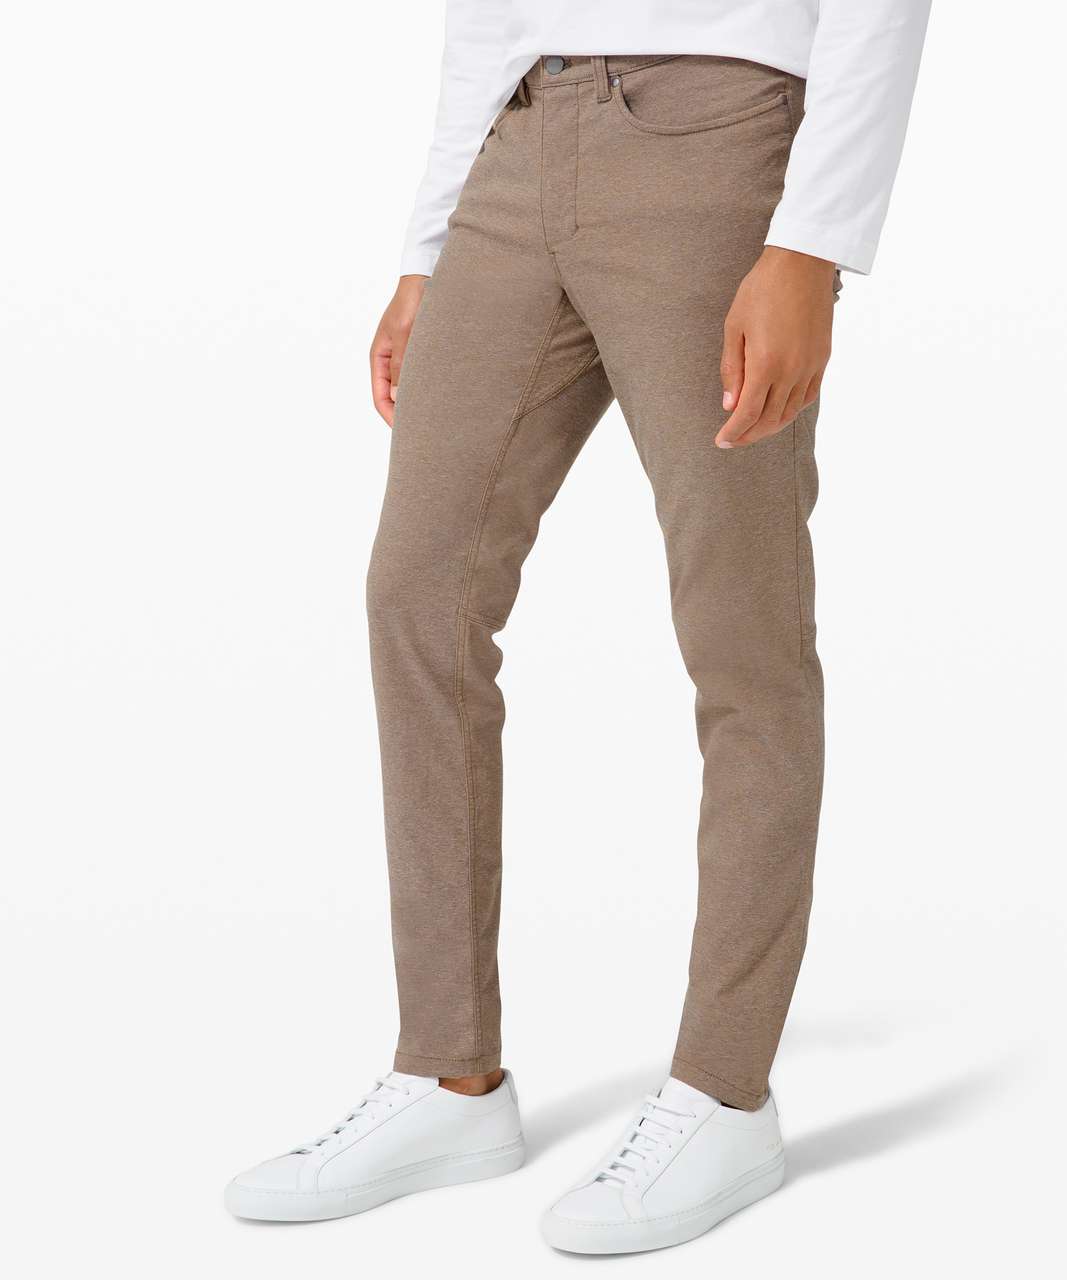 lululemon athletica Abc Classic-fit 5 Pocket Trousers 32l Warpstreme -  Color Khaki - Size 28 for Men